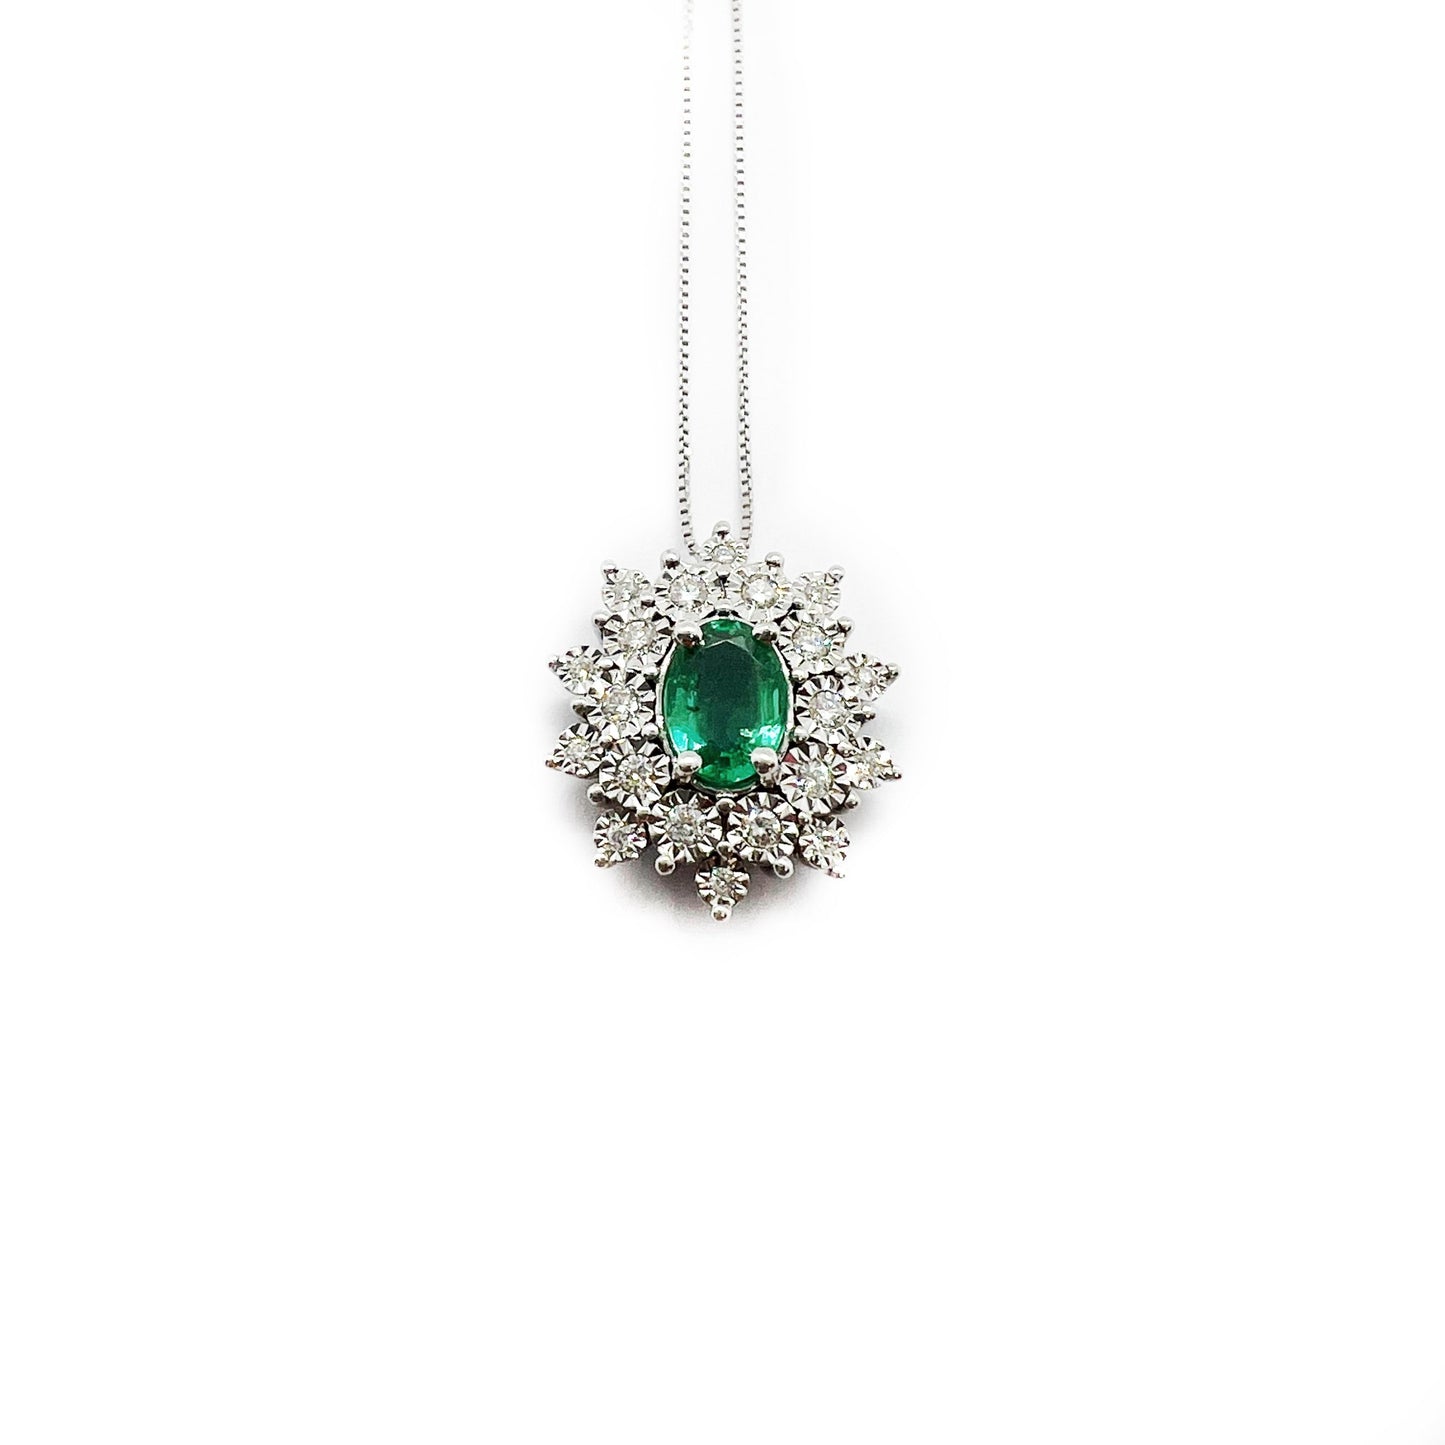 DonnaOro Gioielli | Pendente Smeraldo e Diamanti DCPE9255025